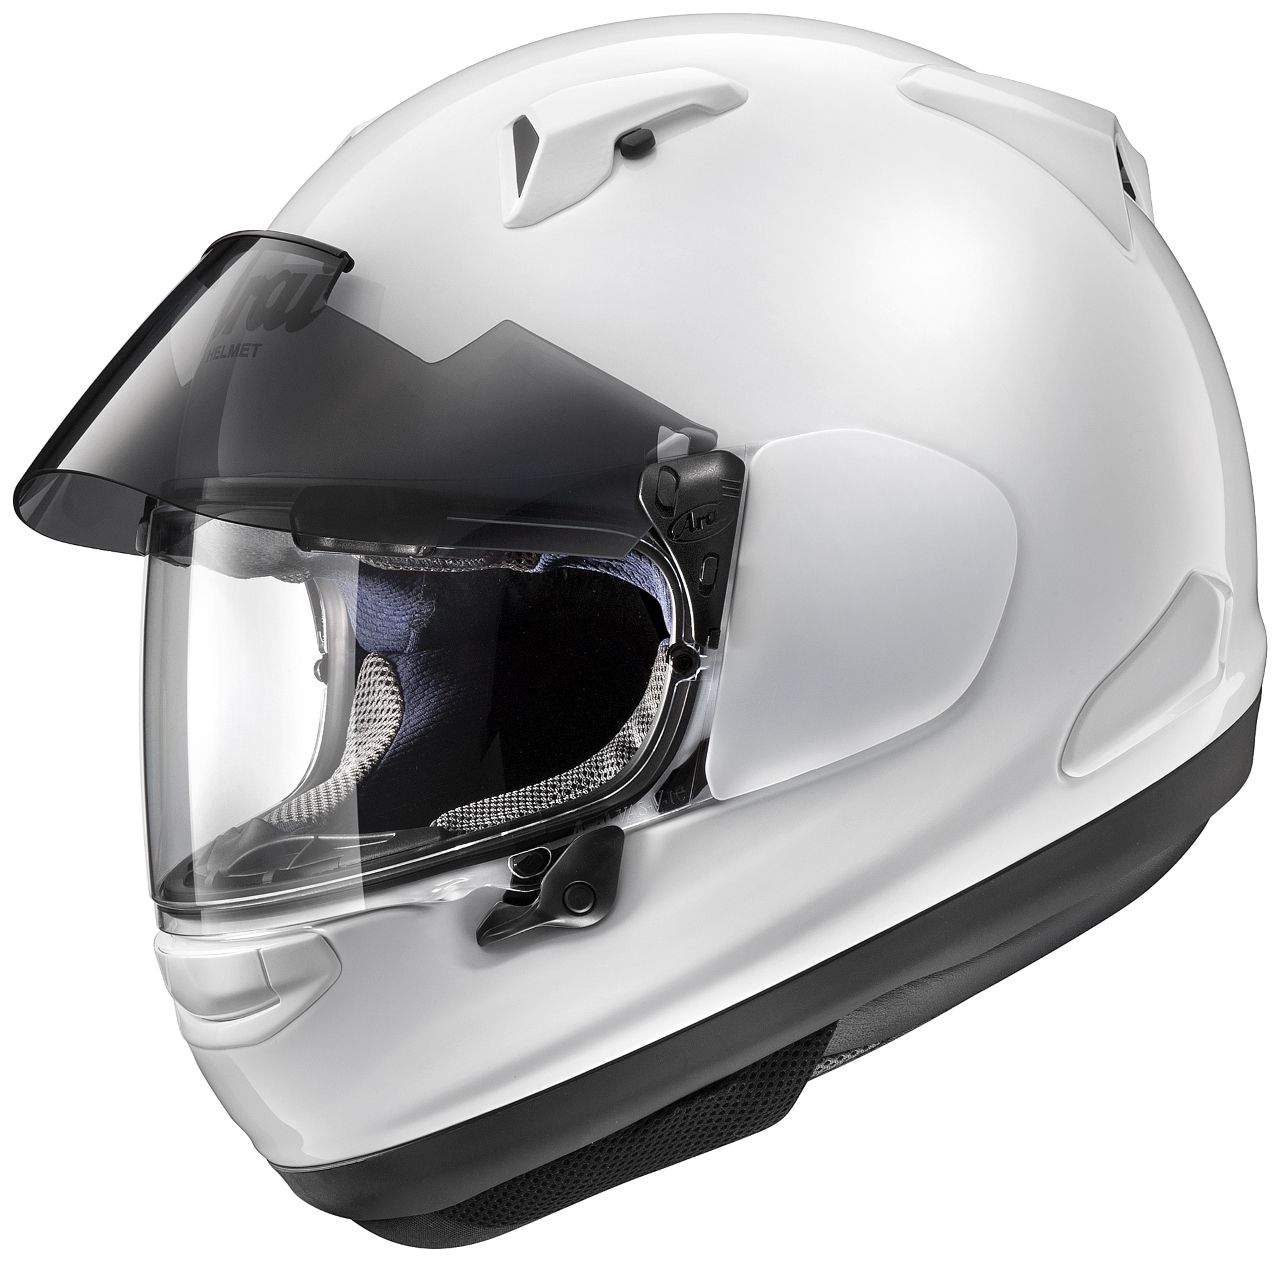 Webike Arai アライ Astral X アストラル エックス グラスホワイト ヘルメット W 49 P フルフェイスヘルメット 通販